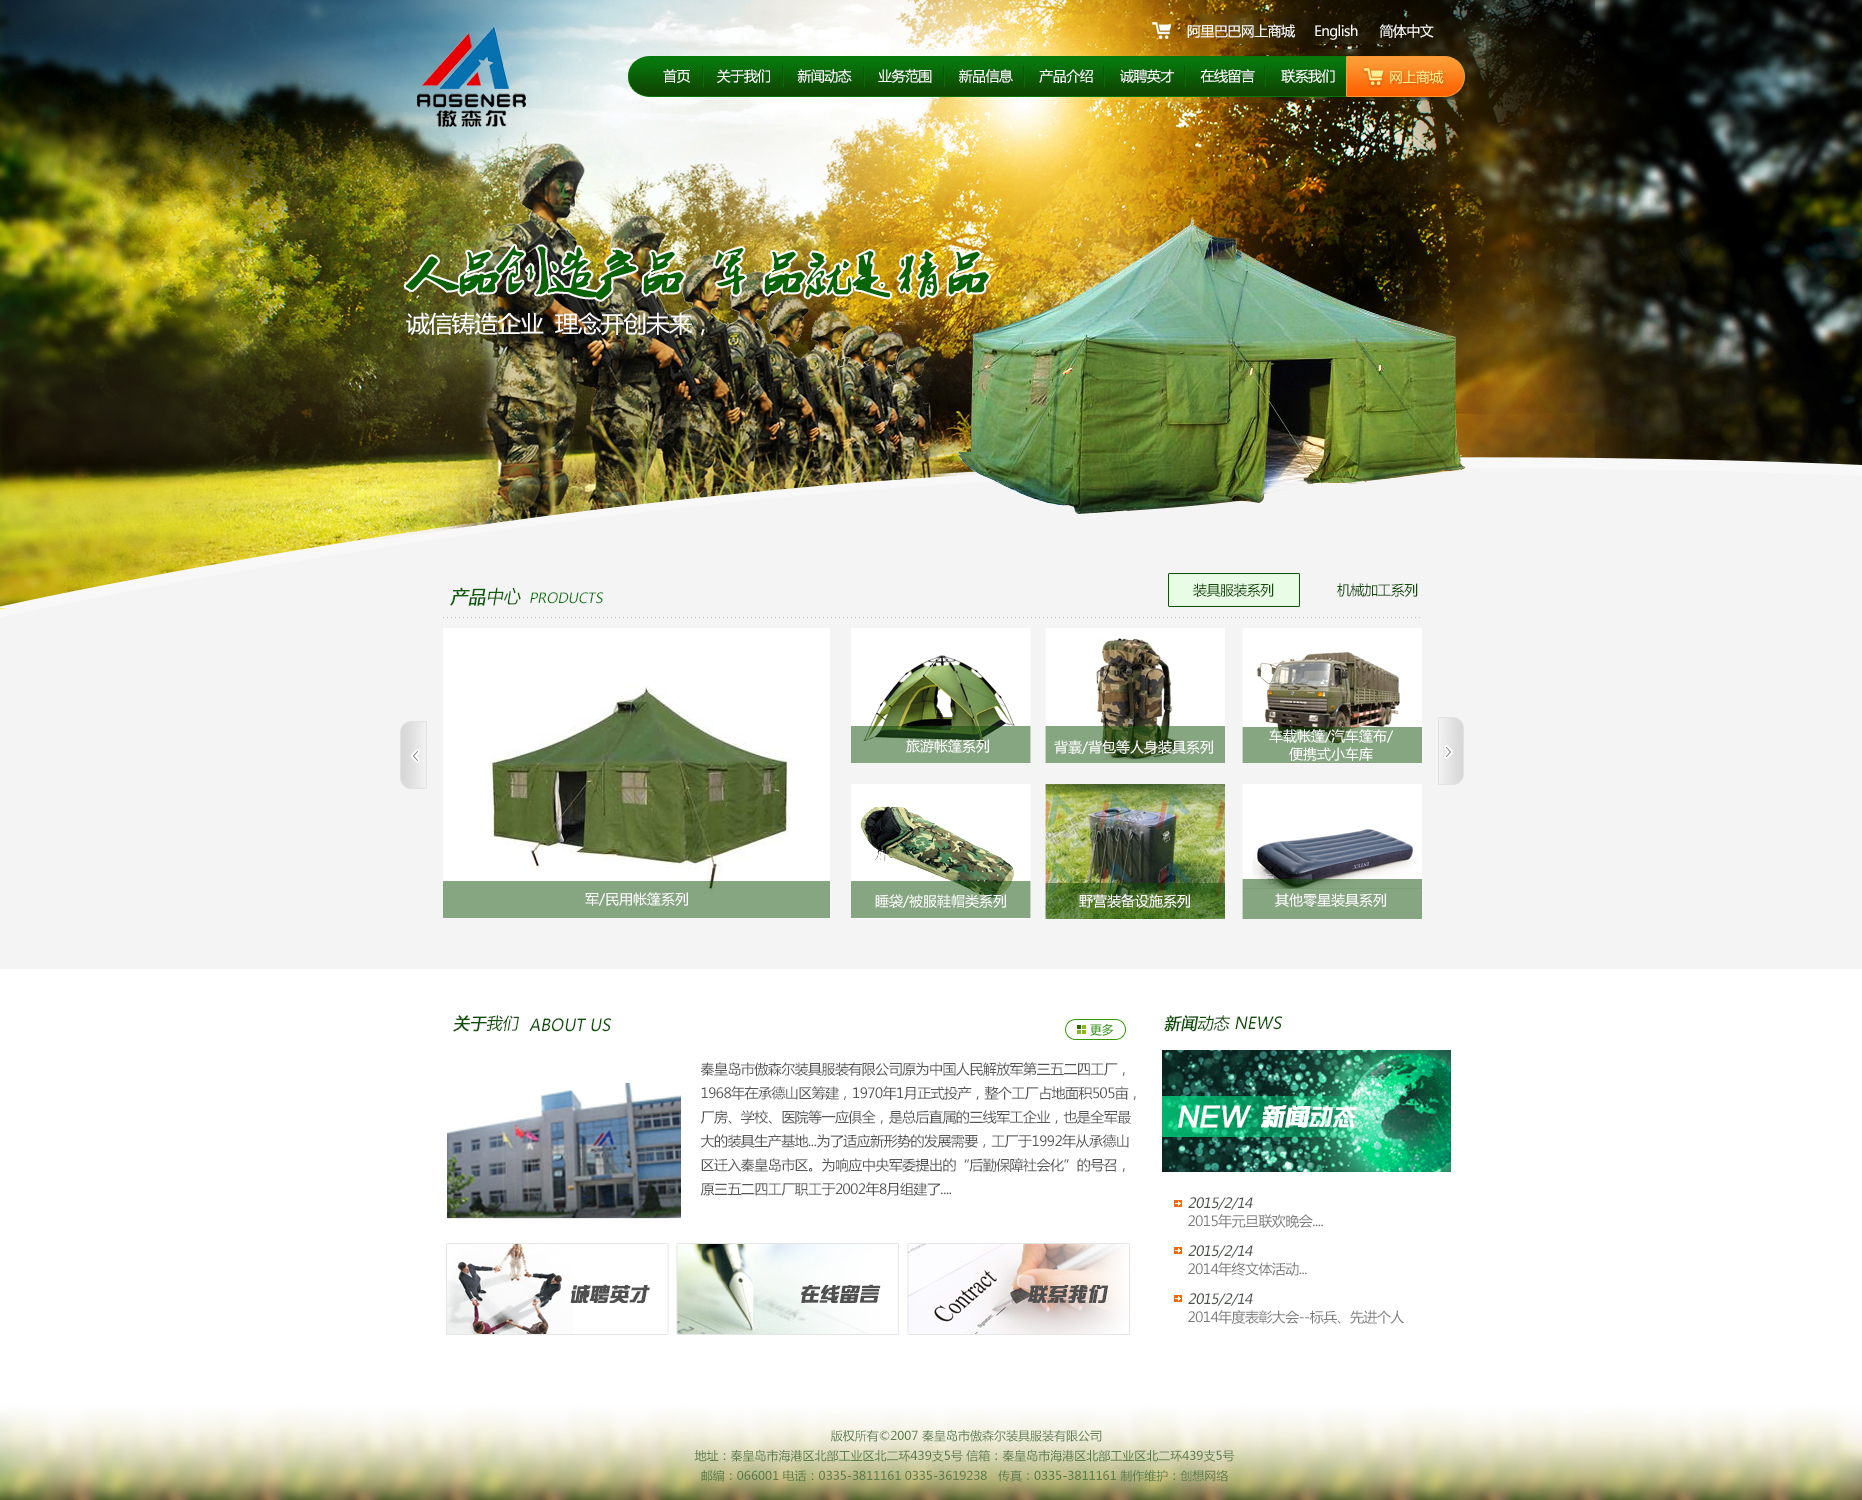 绿色的户外用品公司网站设计模板